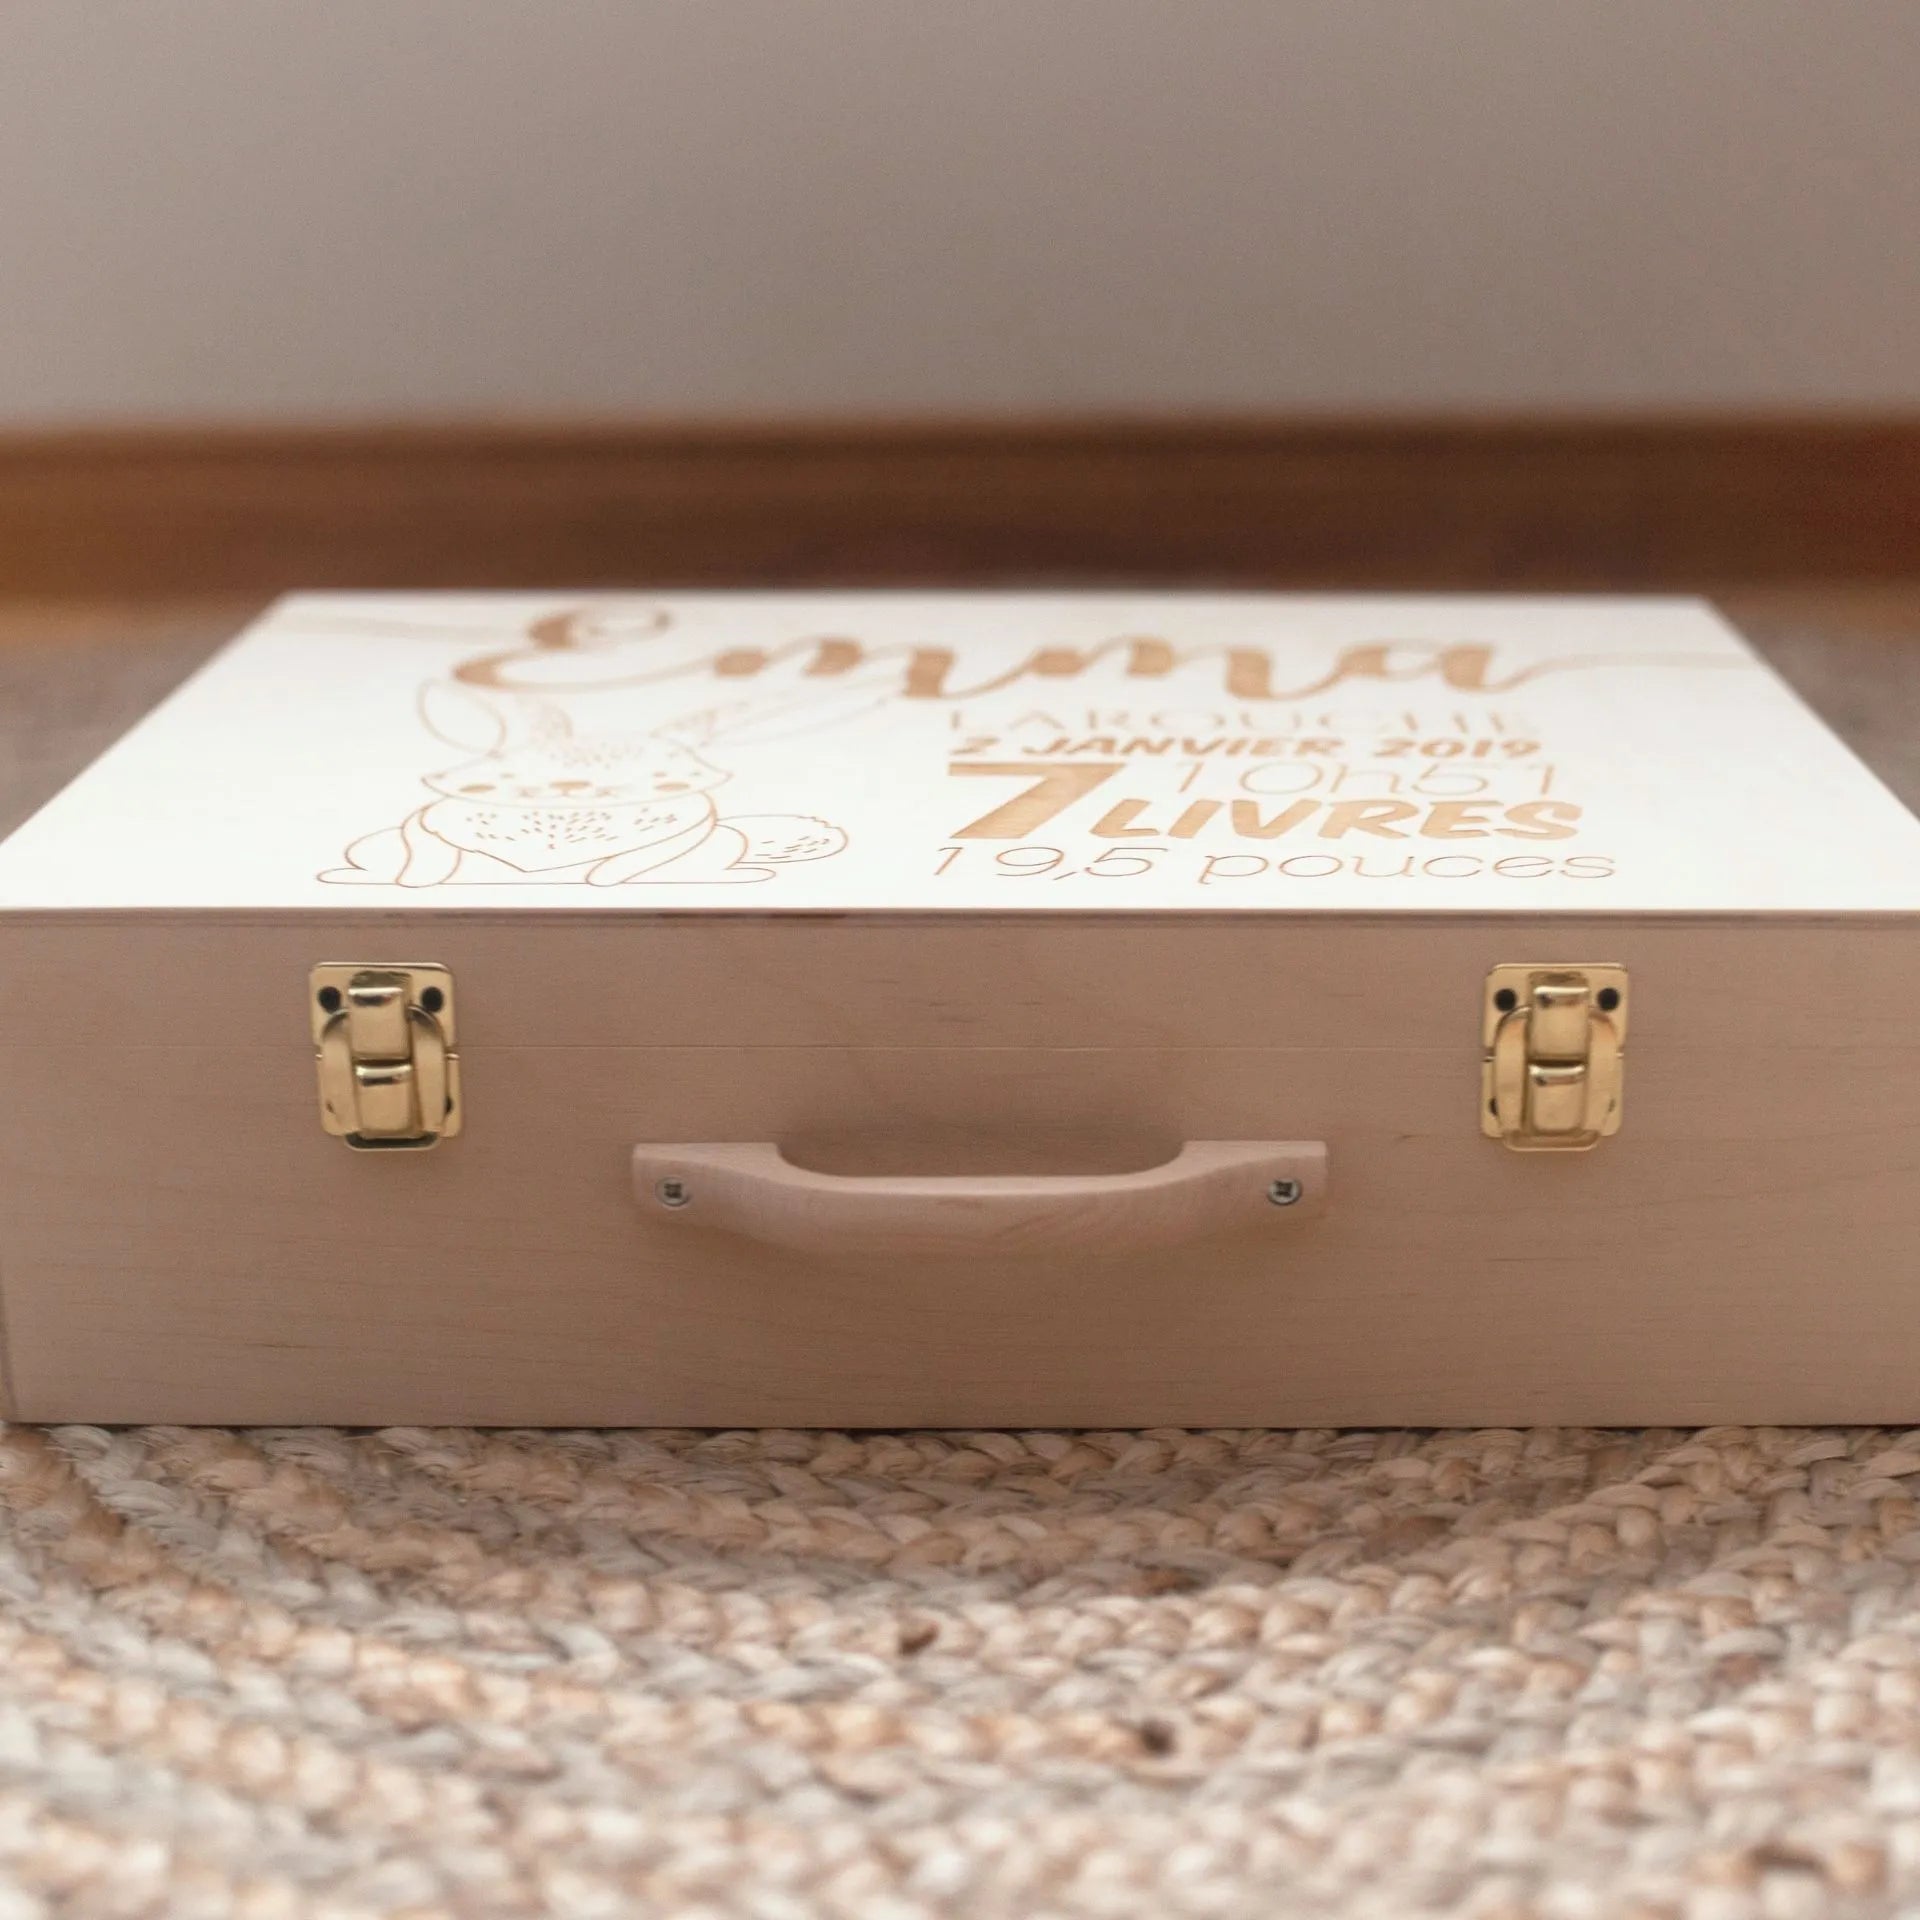 la valise de souvenirs en bois de bouleau et poignée en érable est personnalisable et réalisée de façon artisanale au Québec